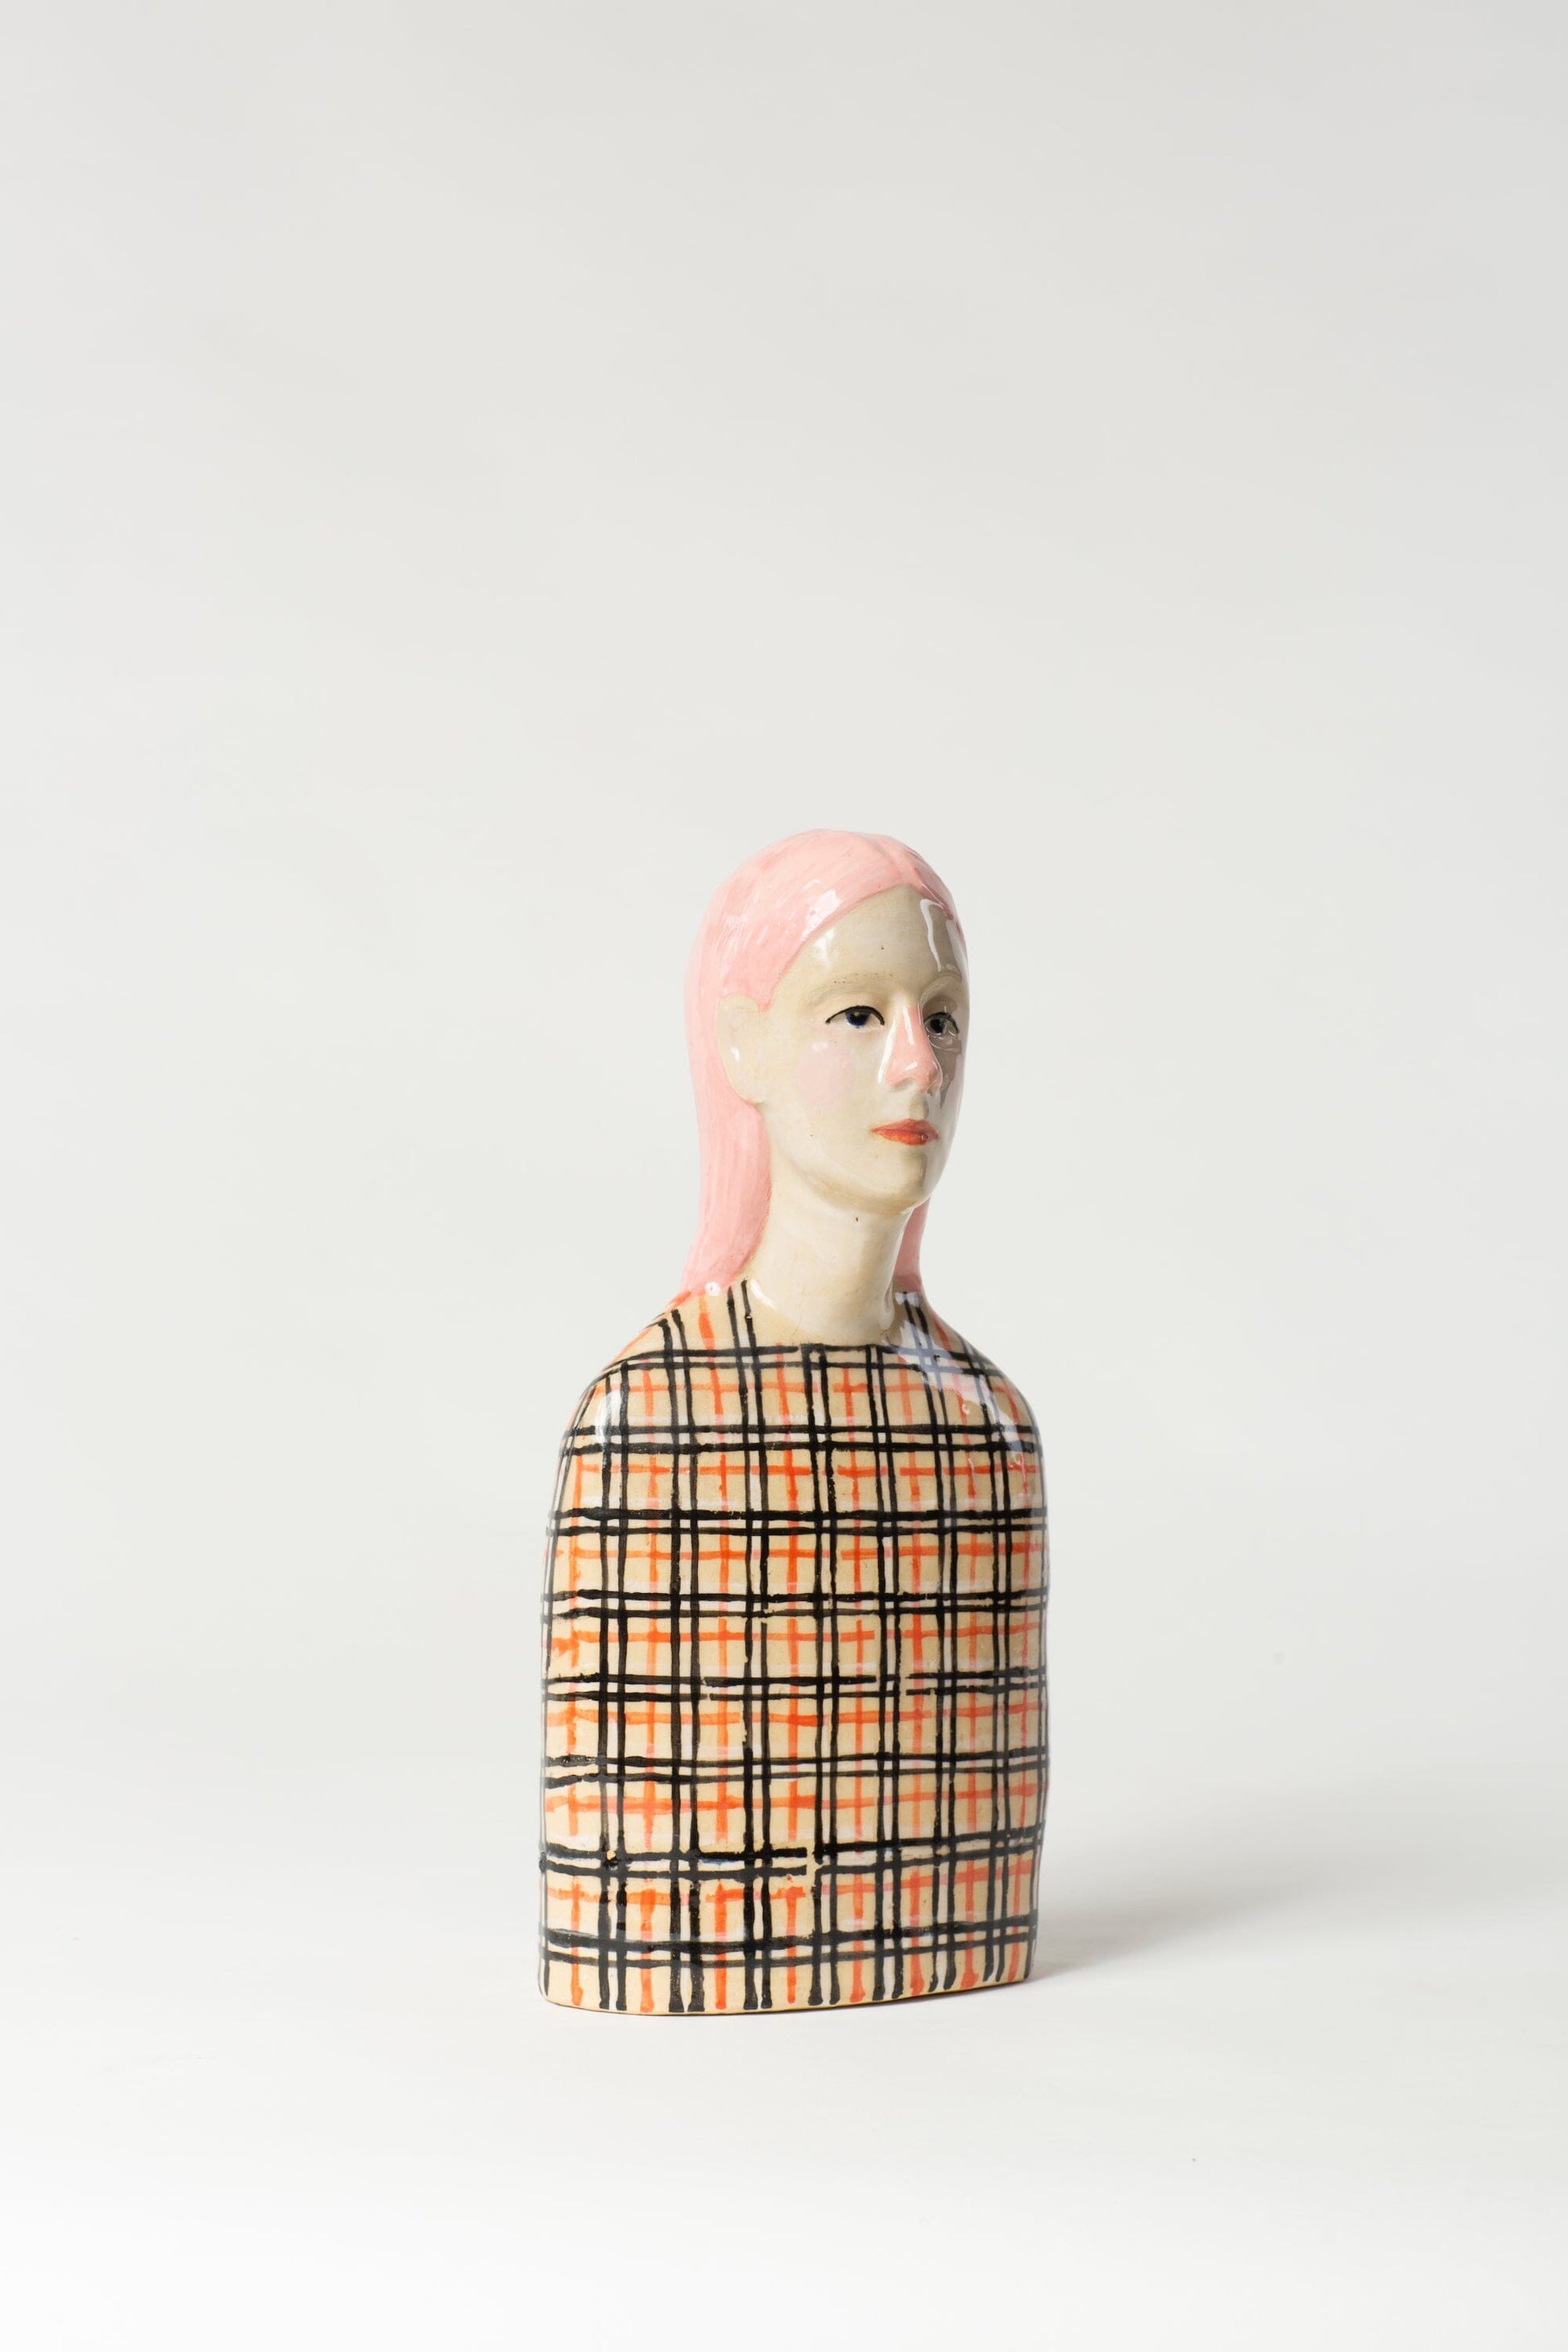 Robin Danielsson Untitled Figures 2023 (rutete genser med rosa hår) Art Salgshallen 